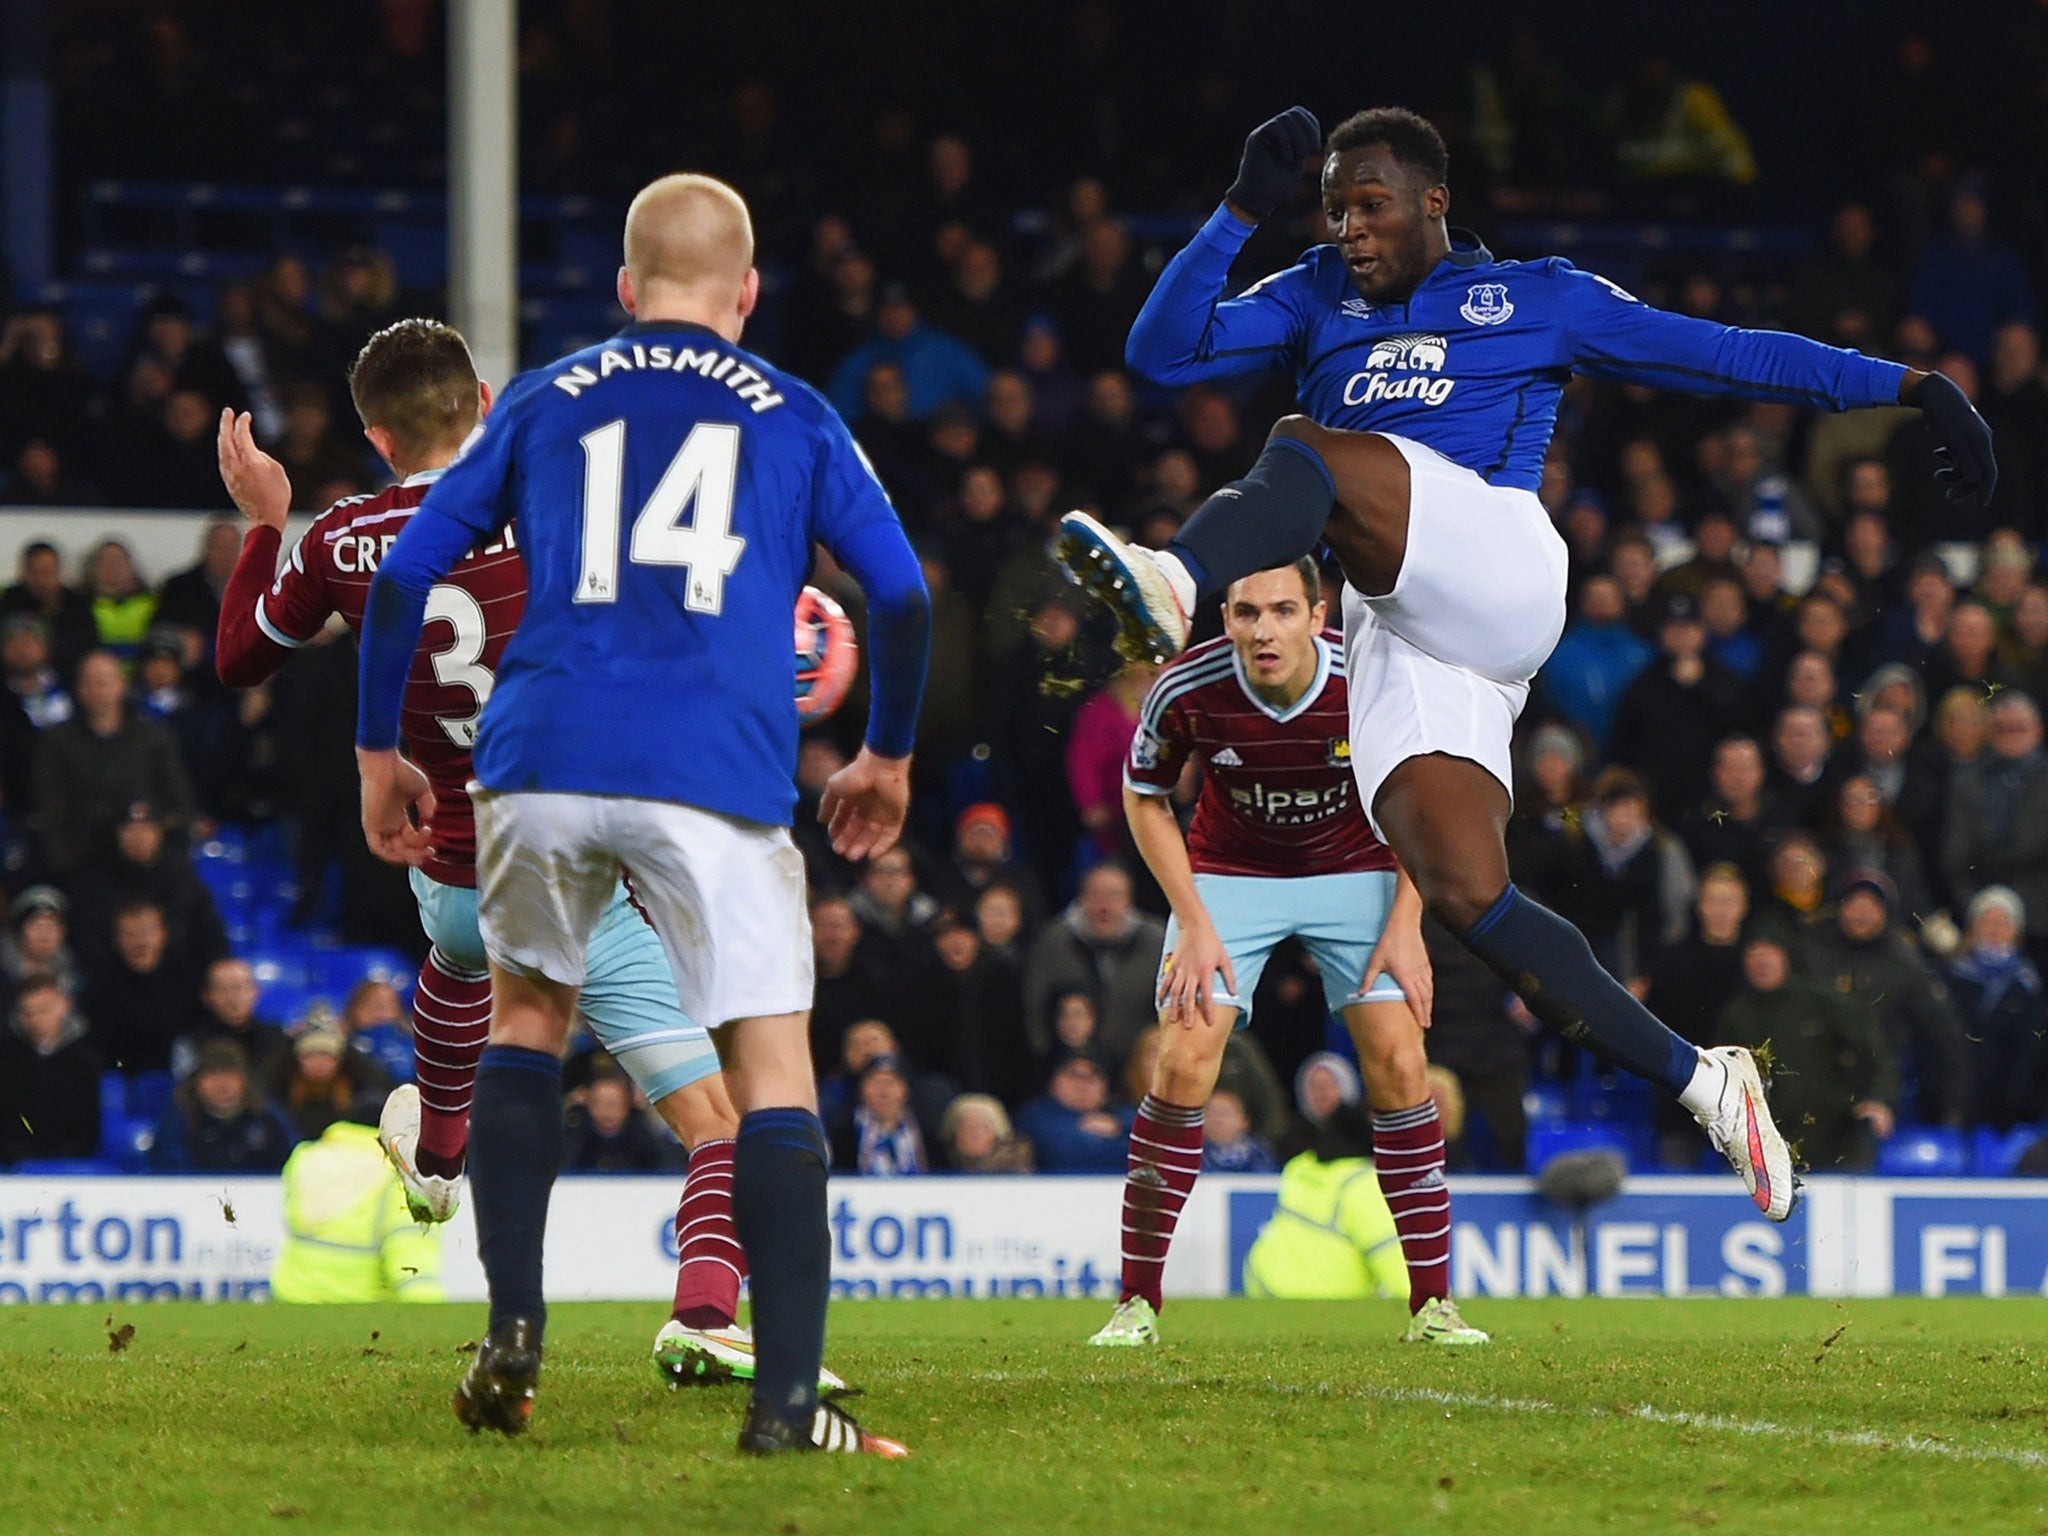 Romelu Lukaku equalises for Everton in injury time